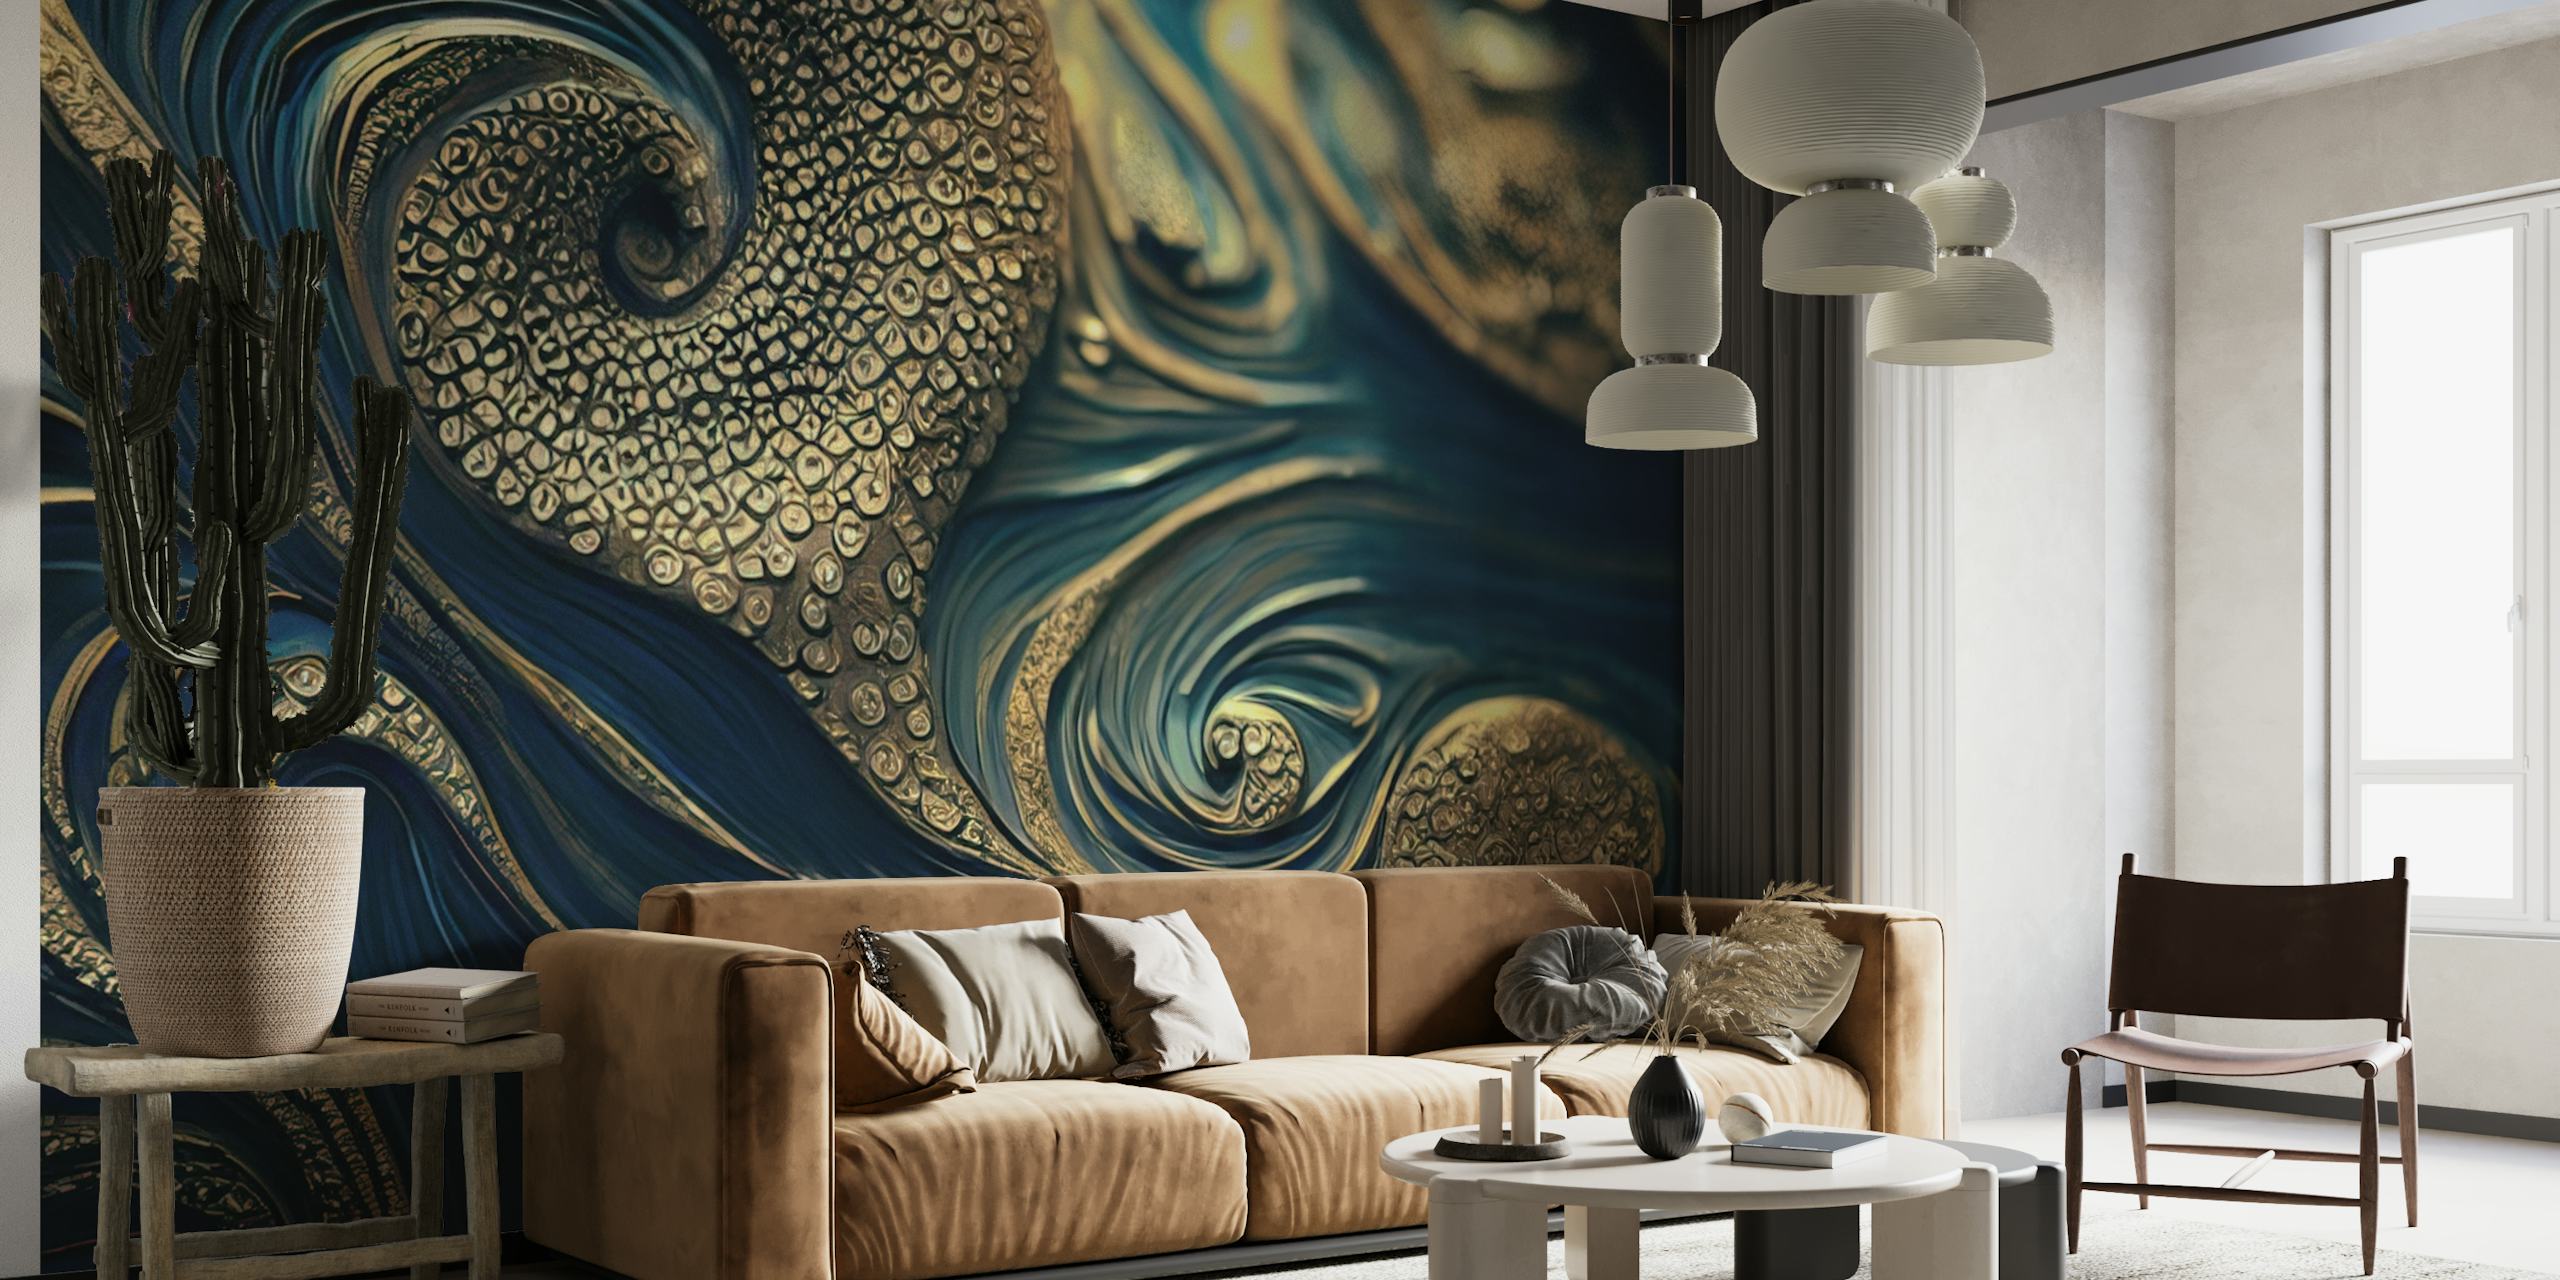 Octopus abstracte muurschildering met wervelende blauwe patronen en gouden accenten